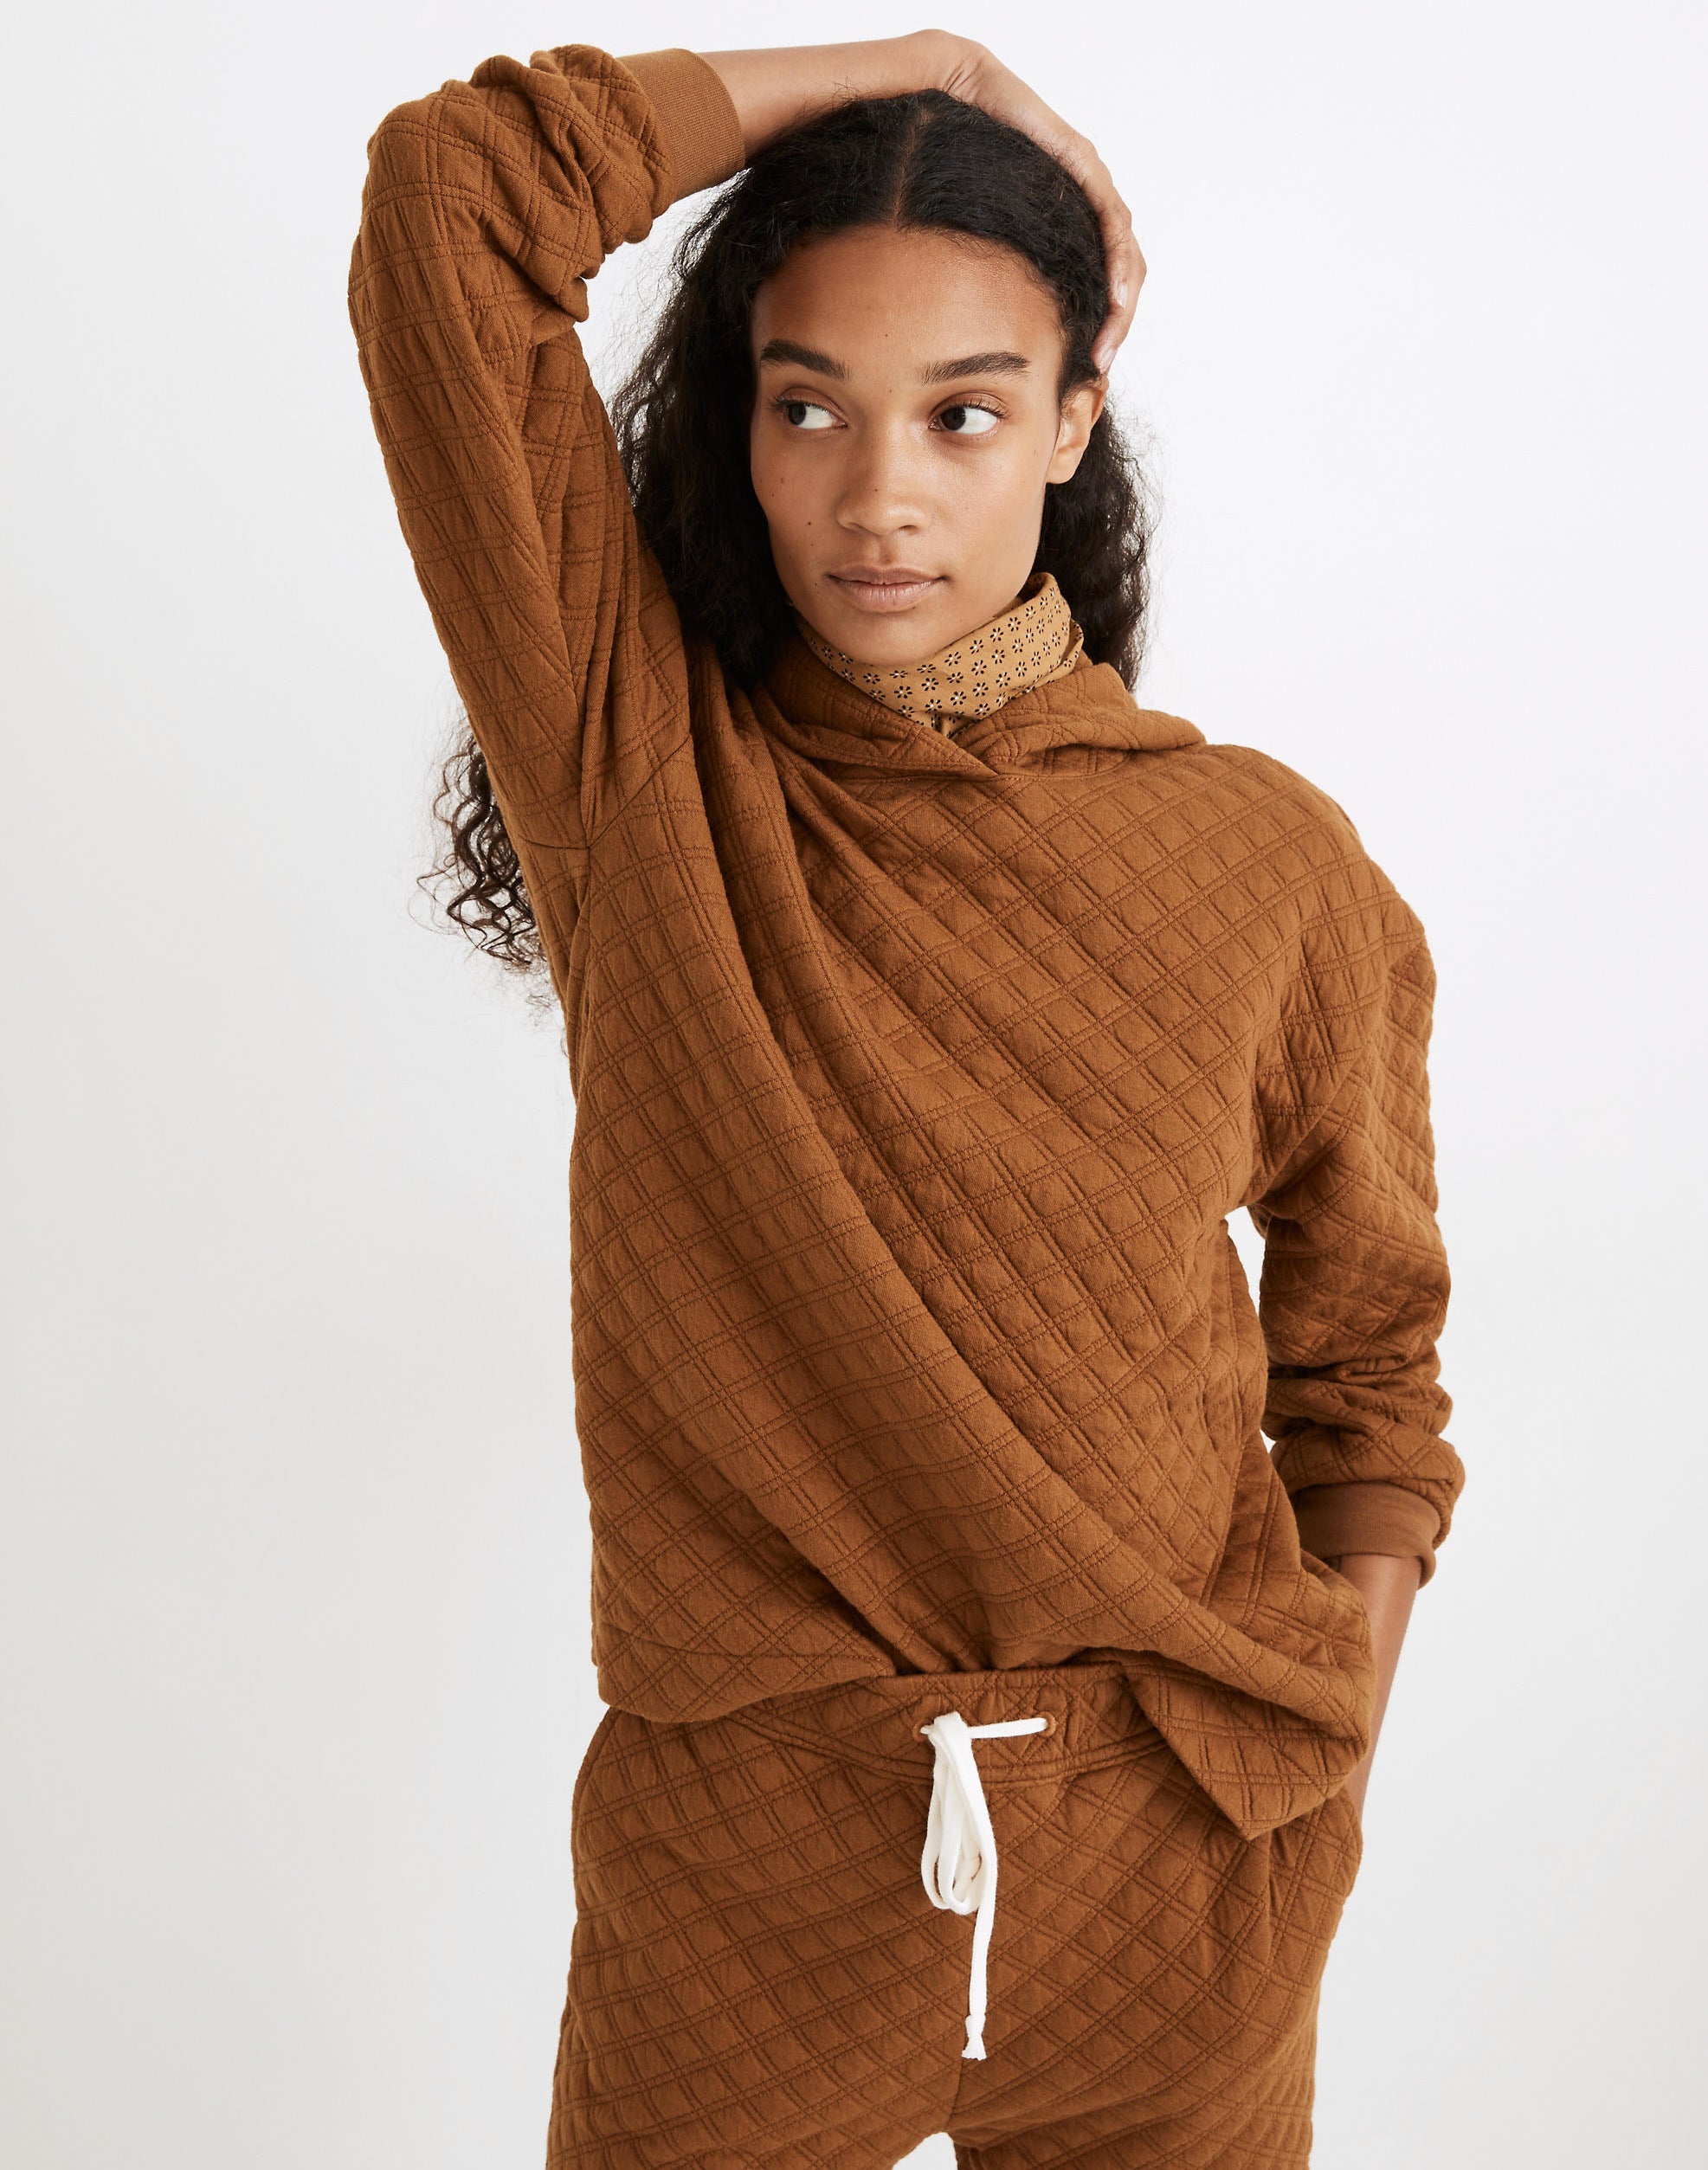 a model in a quilted dark orange sweatshirt